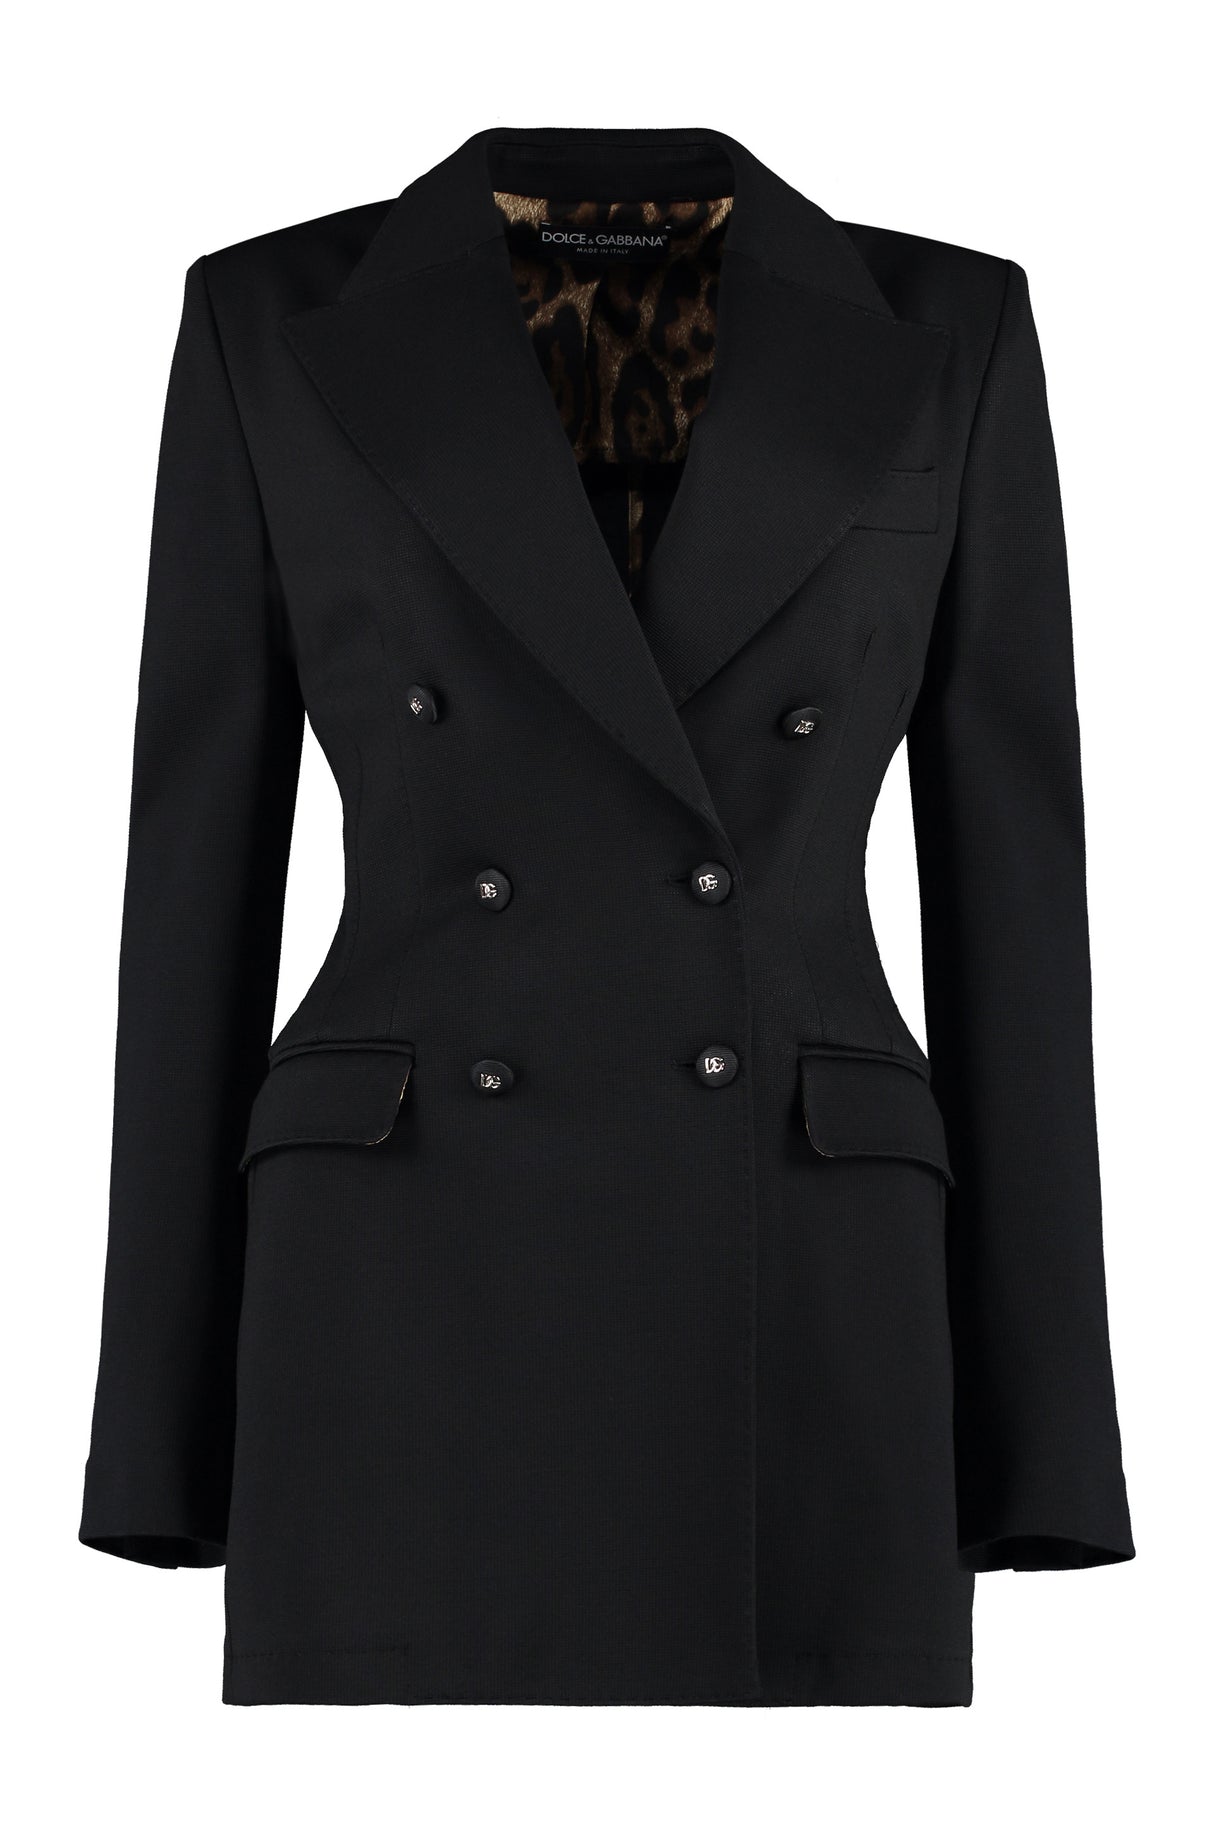 黒いビスコースジャケット - 女性のためのSS23コレクション